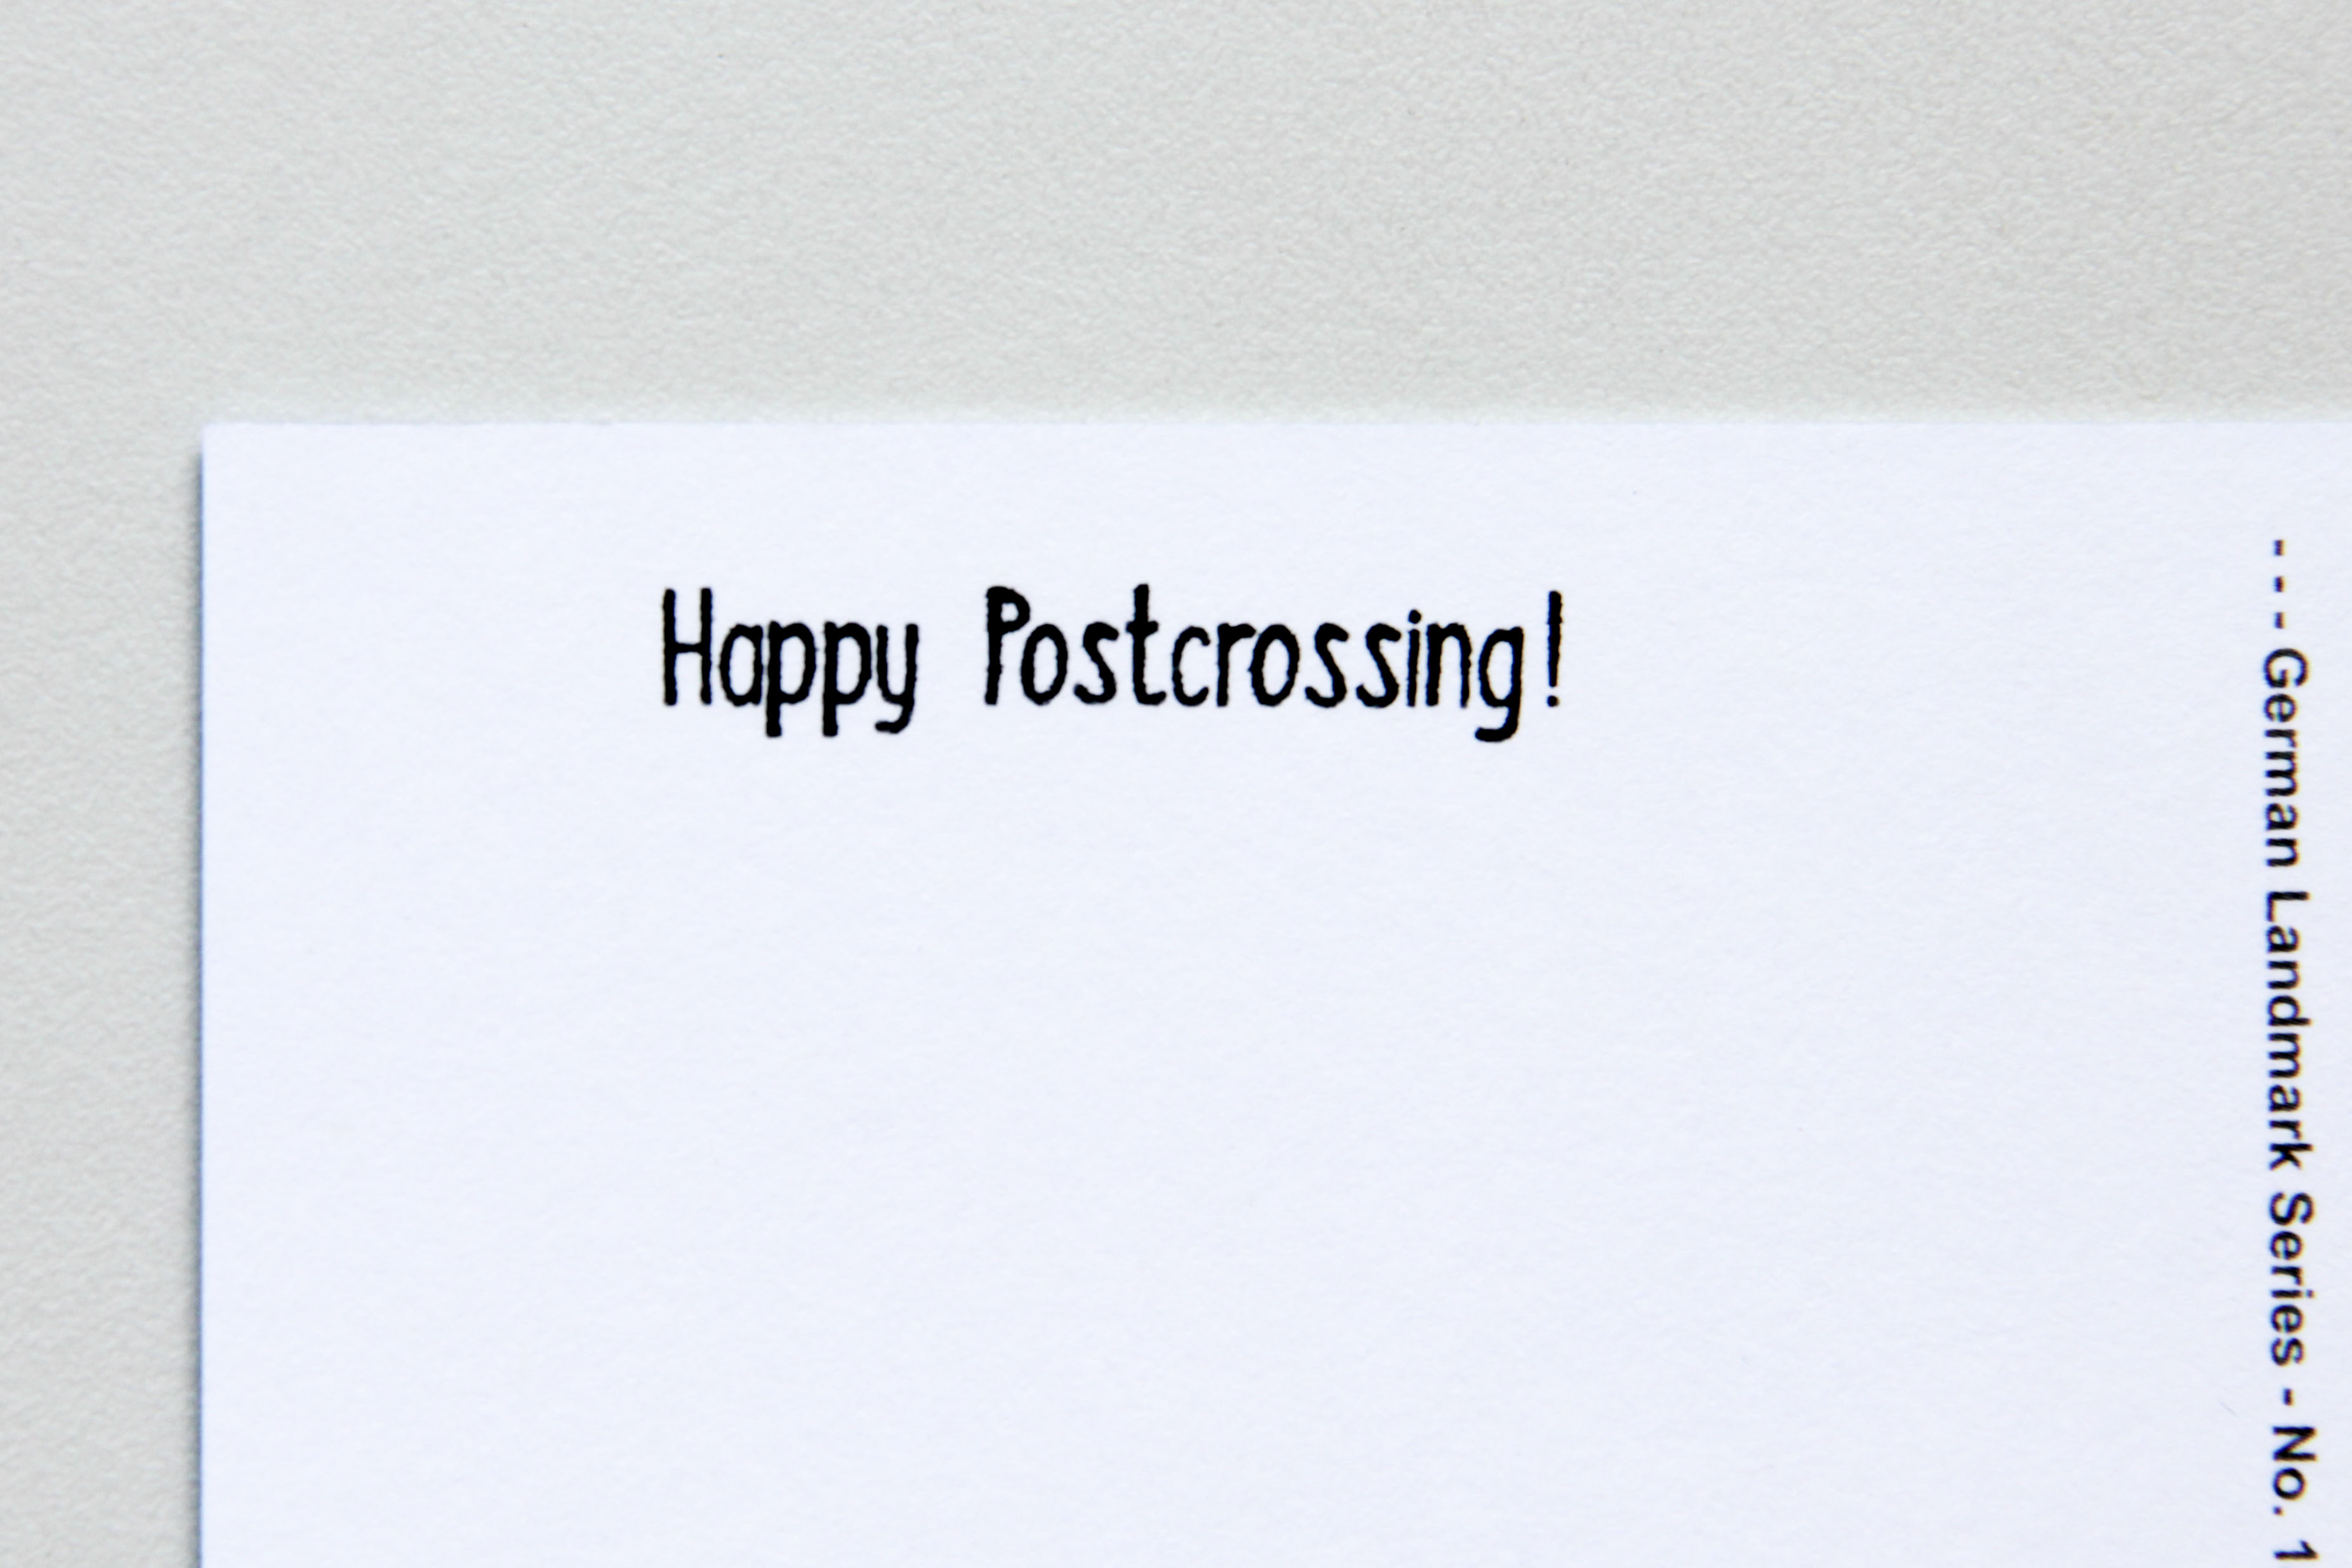 Happy Postcrossing!